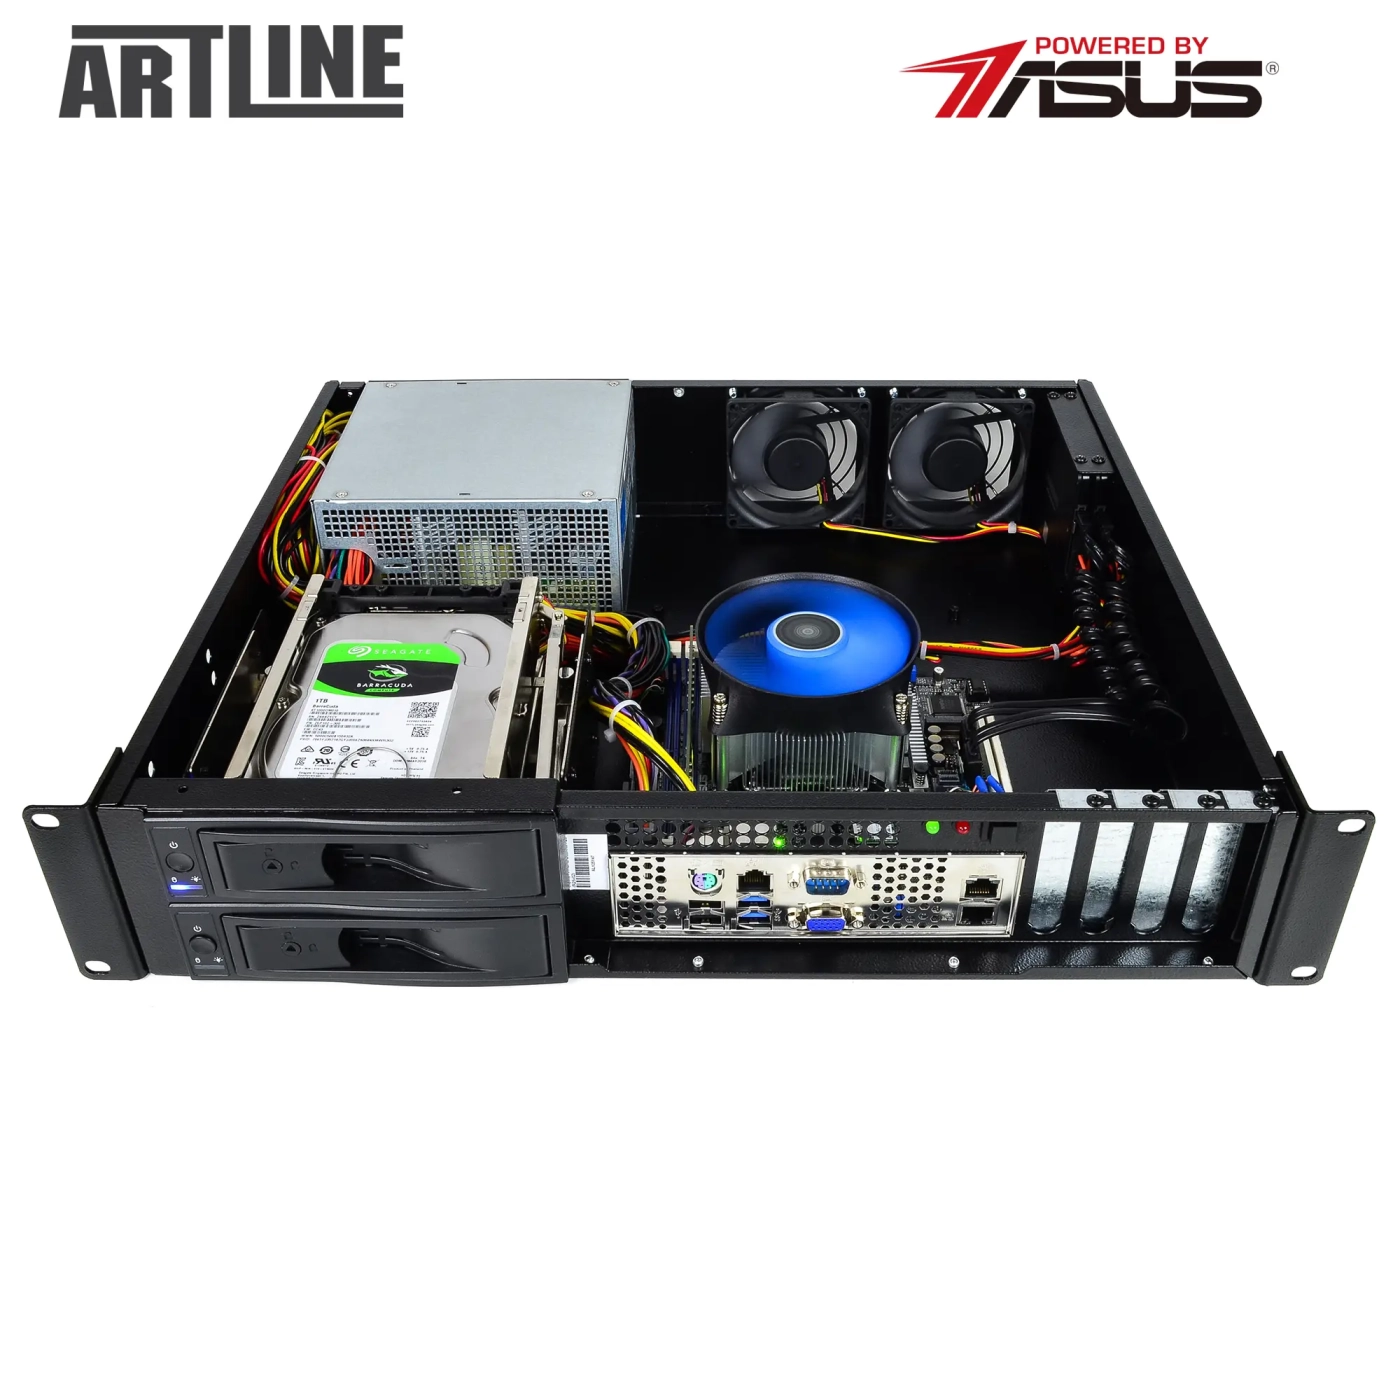 Купить Сервер ARTLINE Business R37 (R37v104) - фото 9